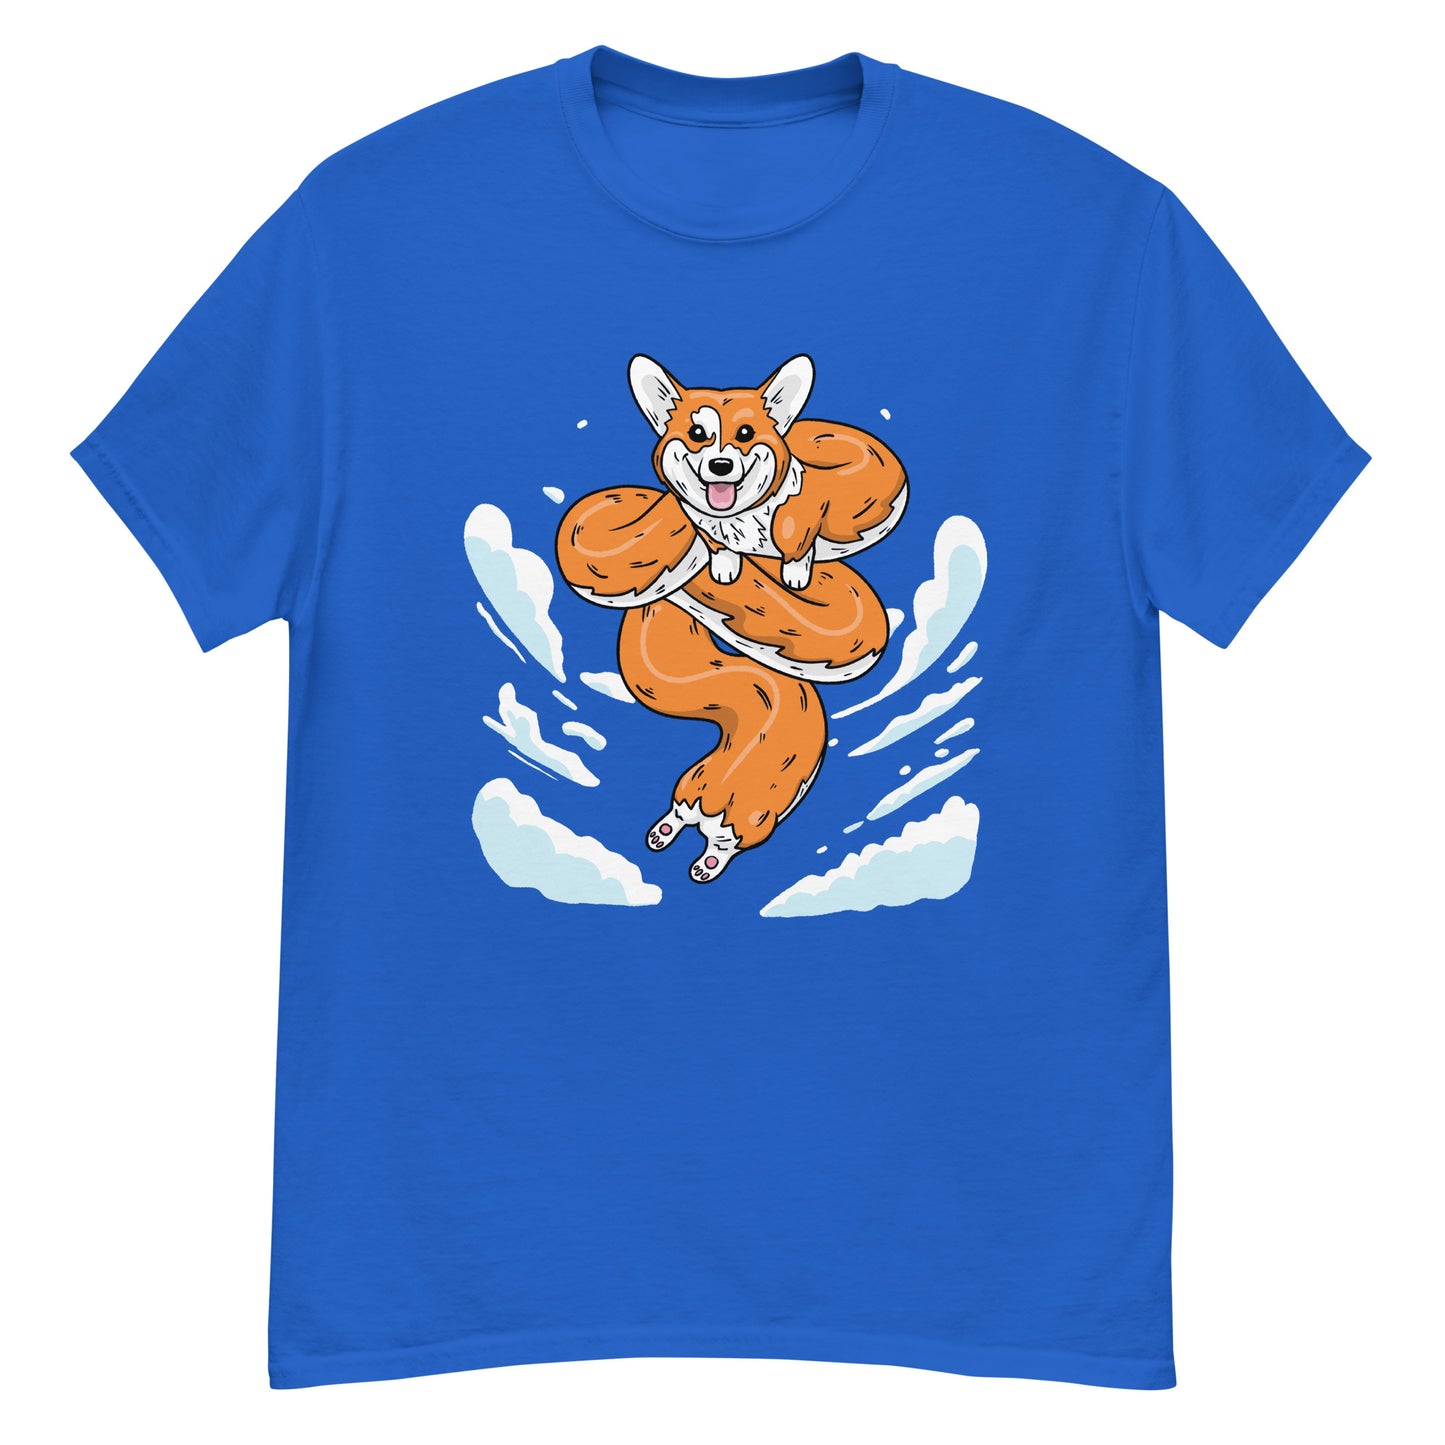 Dragon Corgi - T-Shirt for Anime and Dog Lovers